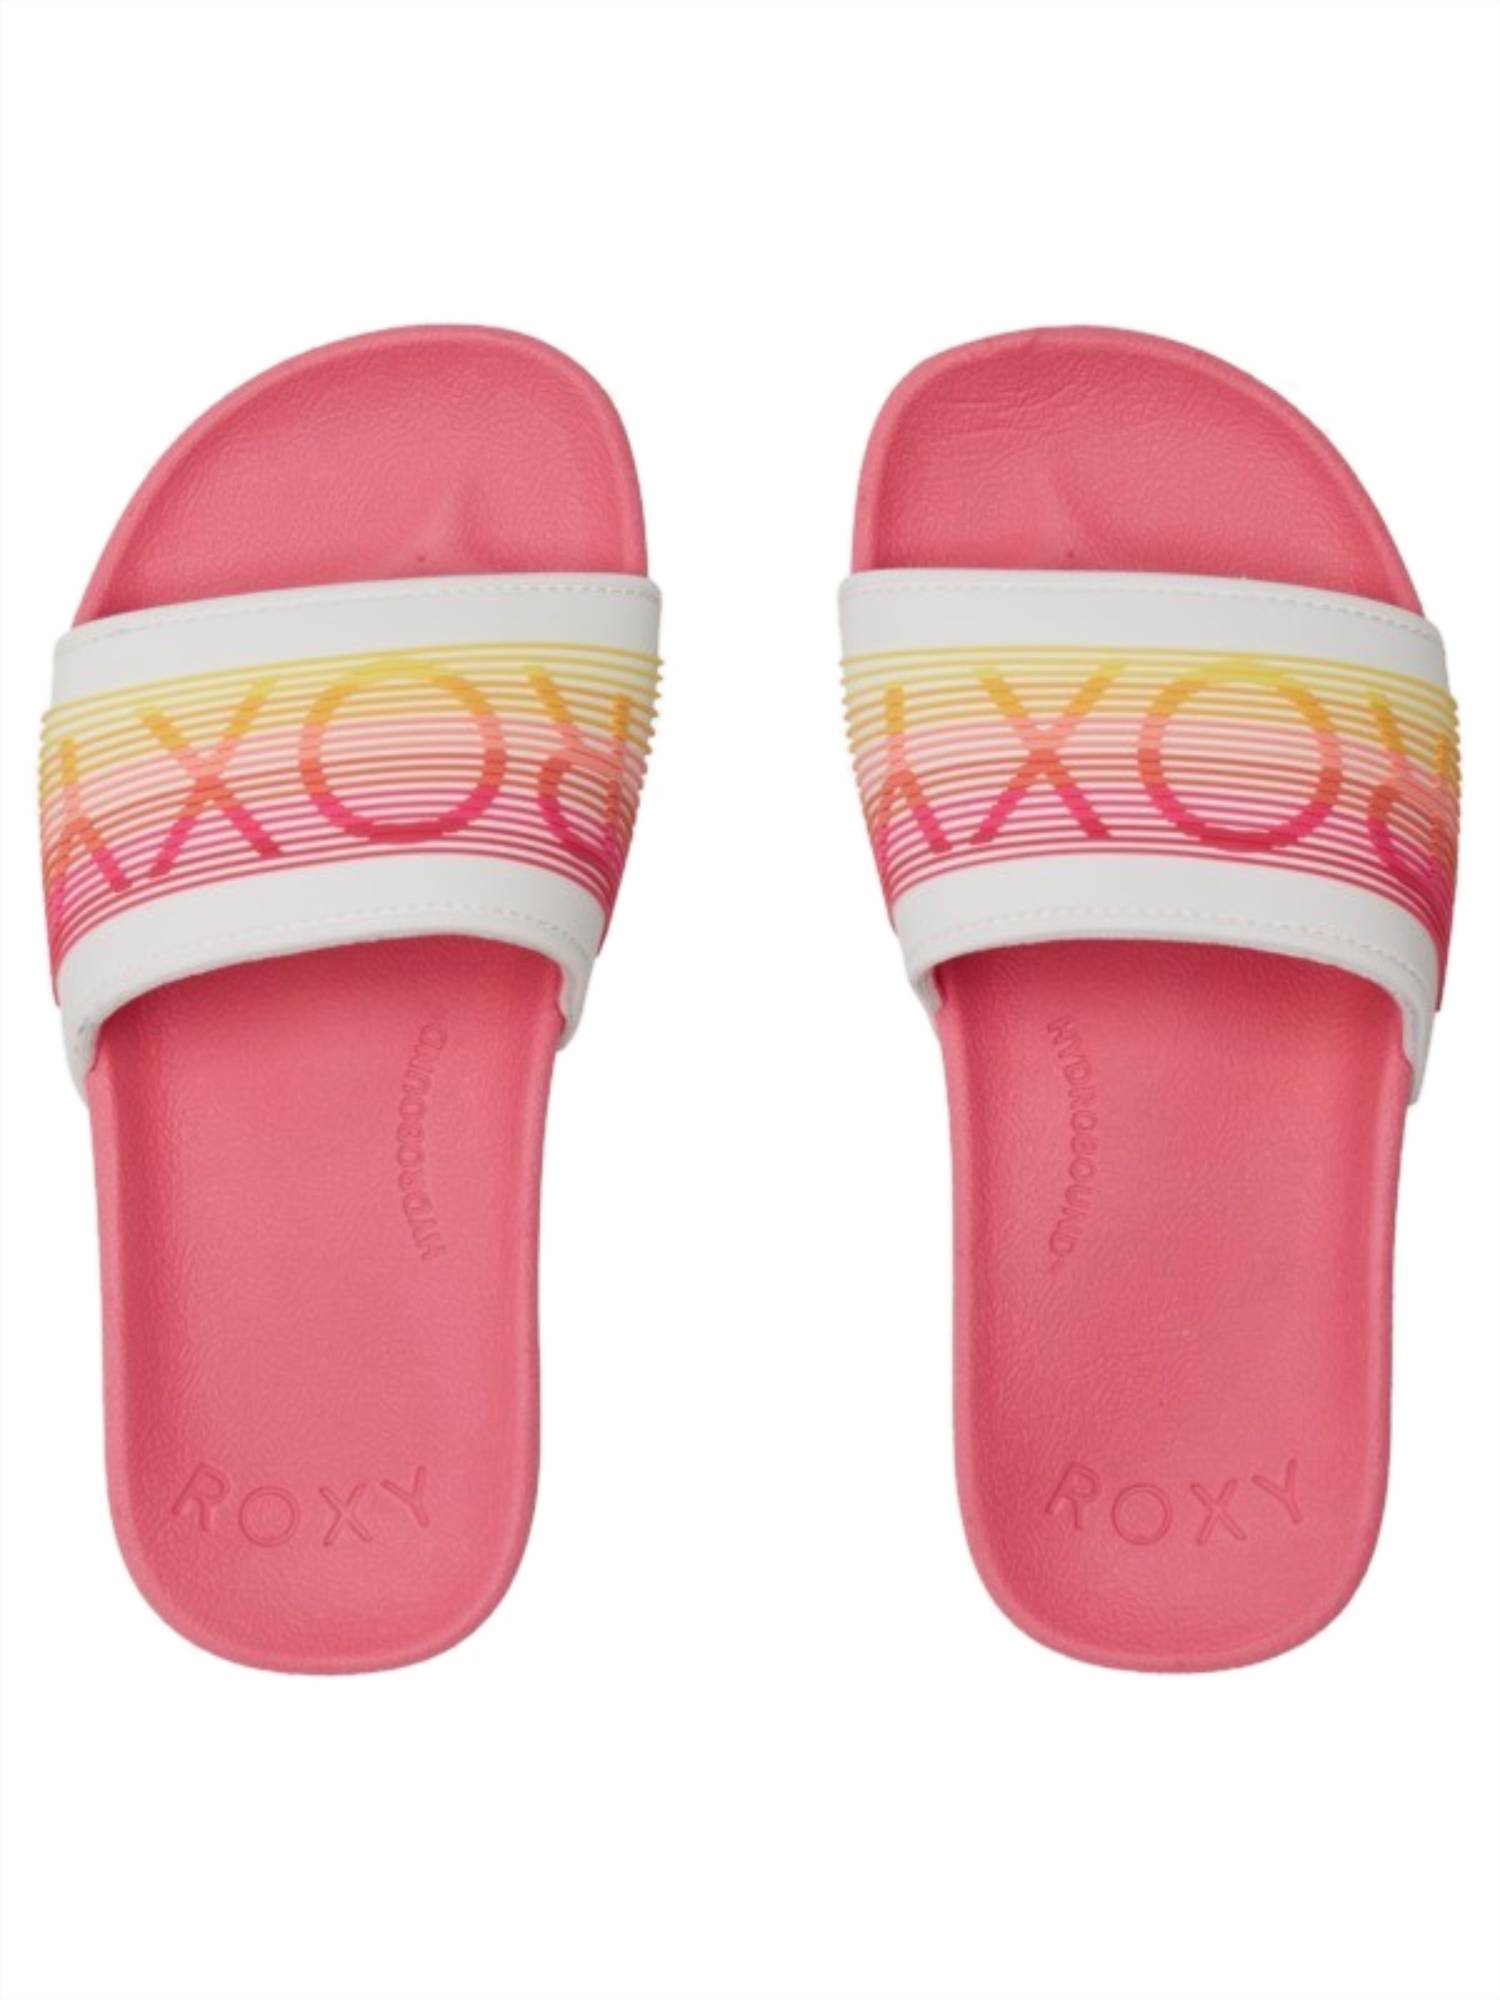 Roxy Slippy LX Girls Sandal PN1-Pink 1 4 Y